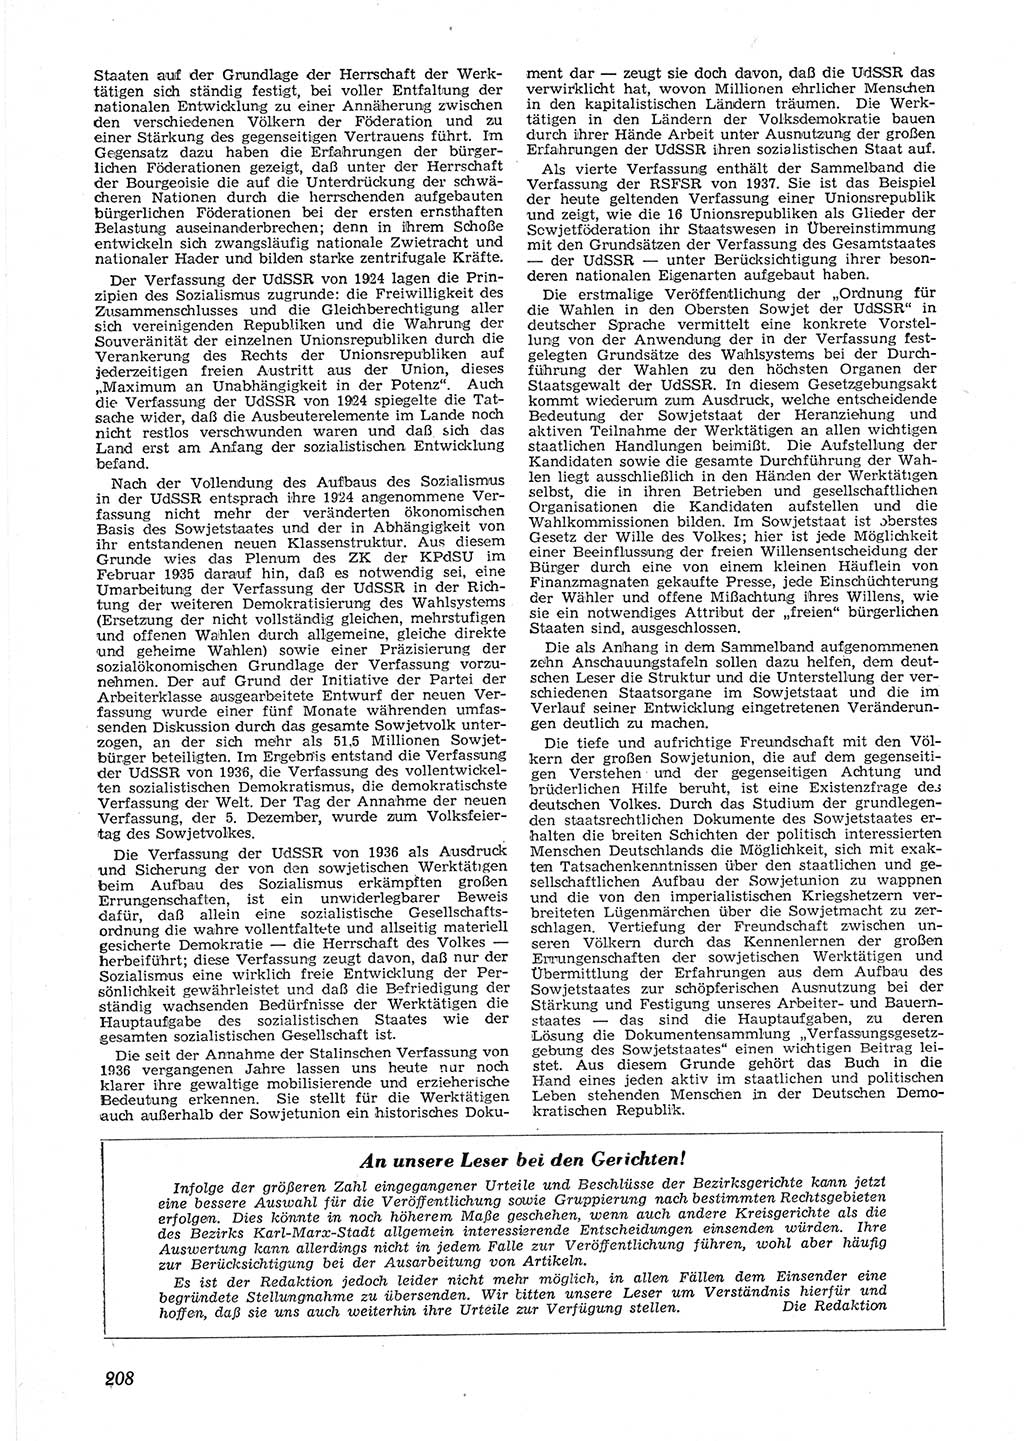 Neue Justiz (NJ), Zeitschrift für Recht und Rechtswissenschaft [Deutsche Demokratische Republik (DDR)], 9. Jahrgang 1955, Seite 208 (NJ DDR 1955, S. 208)